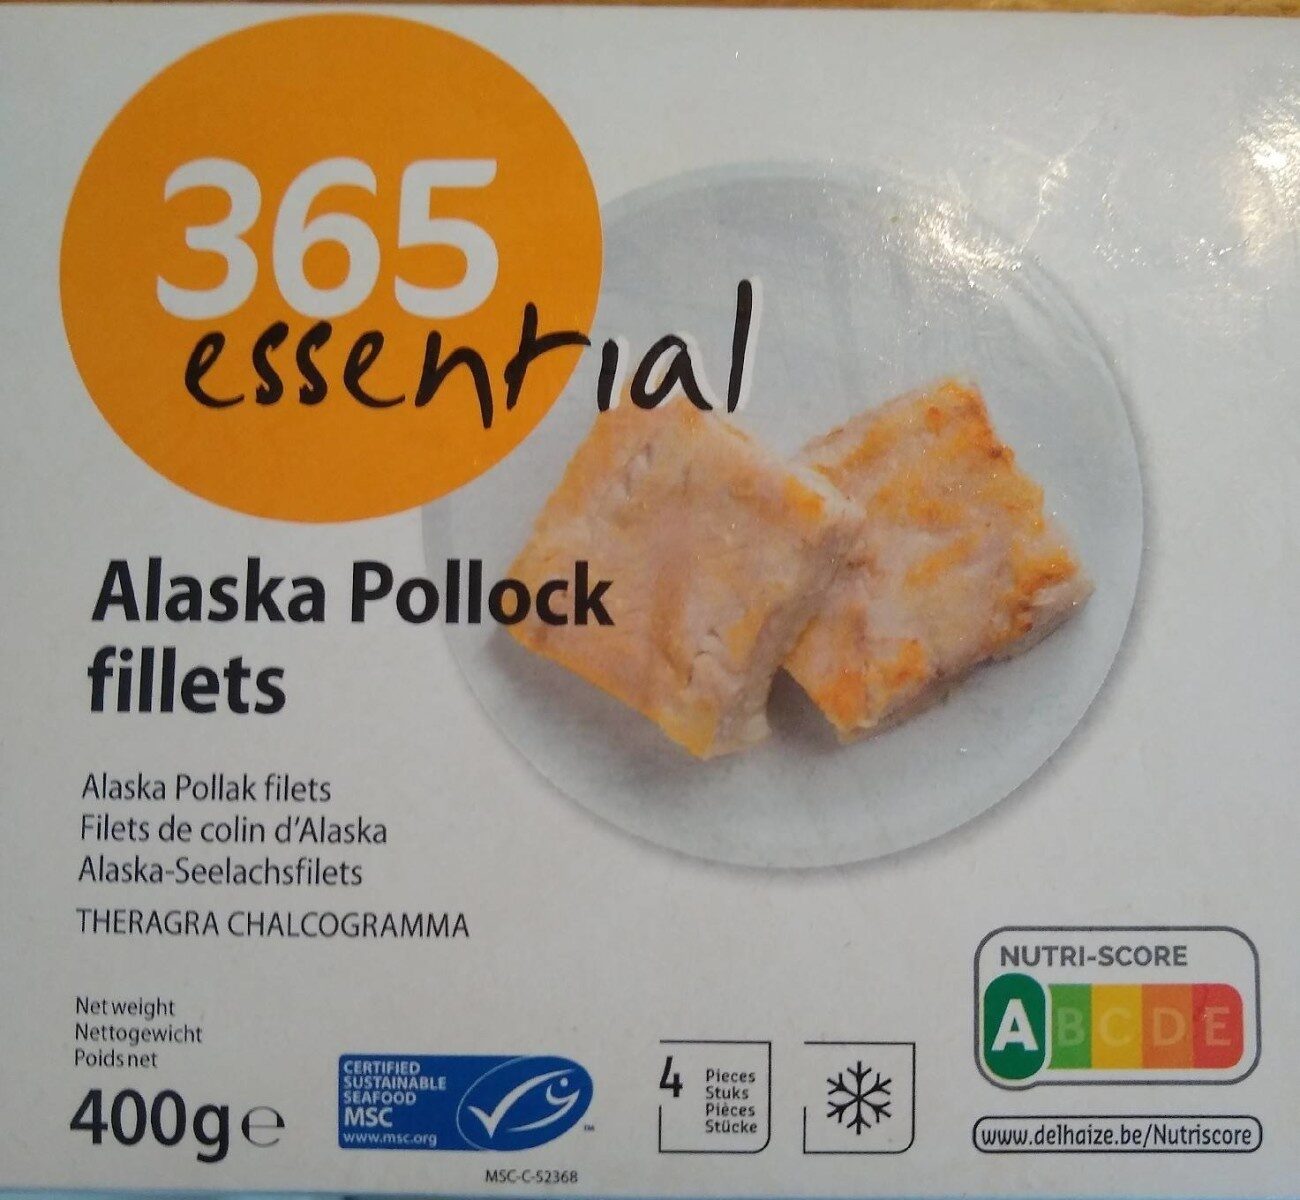 Filets de Colin d'Alaska - Product - fr